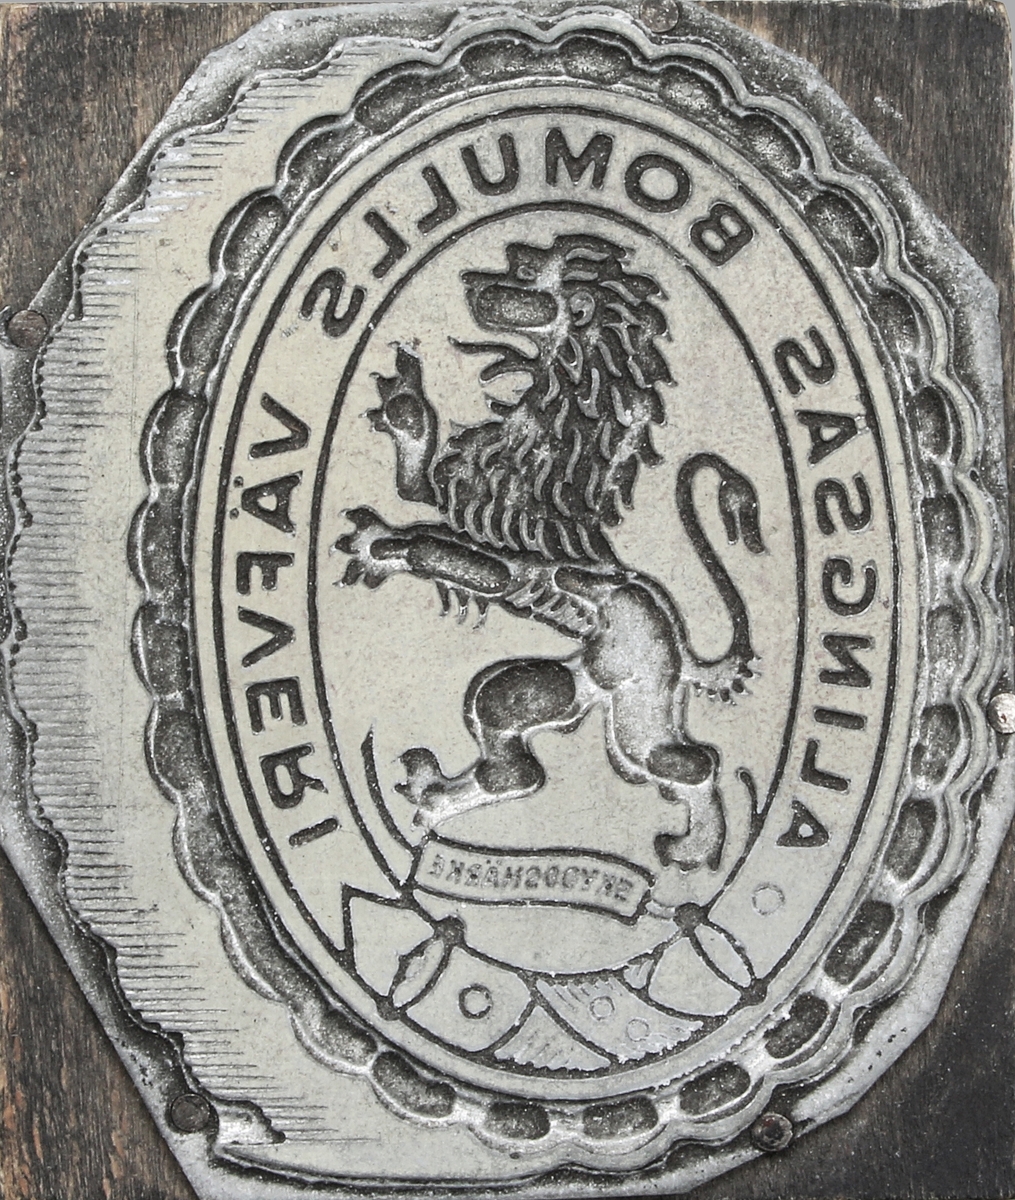 Kliché i vitmetall, limmad på rektangulär träplatta. Motiv i form av oval medaljong, med "stegrande lejon" och texten
"ALINGSÅS BOMULLS VÄEVERI". Ytterst vågmönstrad uddbård. Proveniens Alingsås Bomullsväveri AB, Alingsås.

Alingsås Bomullsväveri lades ner 1970.

Alingsås bomullsväveri AB grundades 1862 i Alingsås.

Väveriet startades av Charles Hill och samtidigt invigdes Västra stambanan, vilka tillsammans fick enorm betydelse för Alingsås utveckling.

Firman ombildades 1884 till aktiebolag och uppköptes 1912 av Nääs fabriksaktiebolag. Den bestod av ett bomullsväveri, ett blekeri, färgeri och appreturverk. År 1946 hade firman omkring 550 anställda, vilka producerade oblekta, blekta, färgade och kulörta bomullsvävnader. Det var stadens dominerande arbetsgivare, och tack vare att även besläktad verksamhet etablerades förknippades Alingsås starkt med textilindustrin. 

Fabriksbyggnaderna i centrala Alingsås revs i mitten av 1960-talet. (Wikipedia)